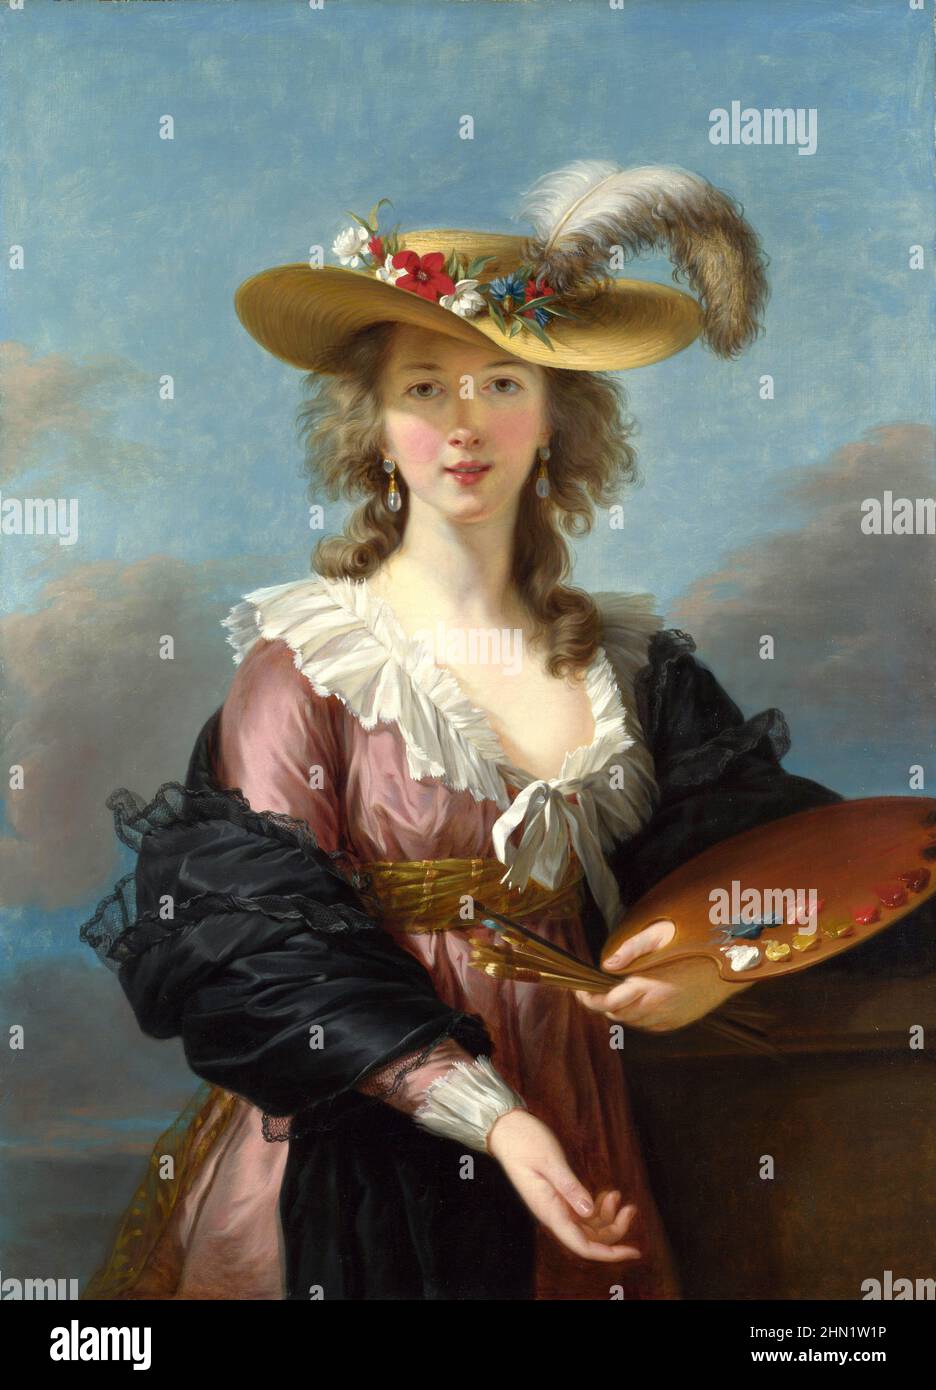 Élisabeth Louise Vigée le Brun (1755 – 1842) connue sous le nom de Madame le Brun, peintre de portrait français à la fin du siècle 18th. Autoportrait dans un chapeau de paille, 1782 Banque D'Images